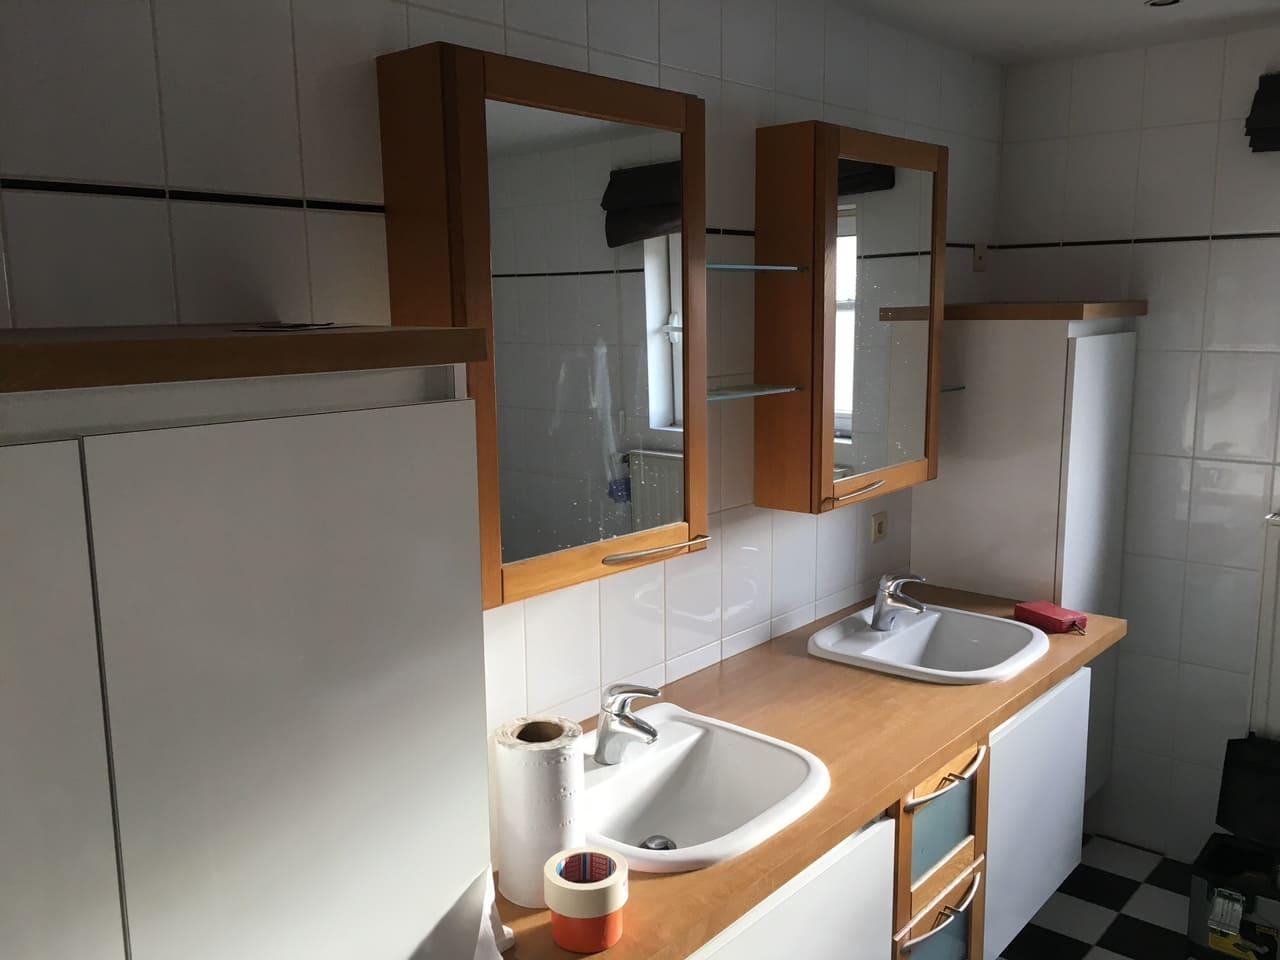 Badkamer en sanitair renovatie | Tim Vlaeminck | Mooseworks Aalter